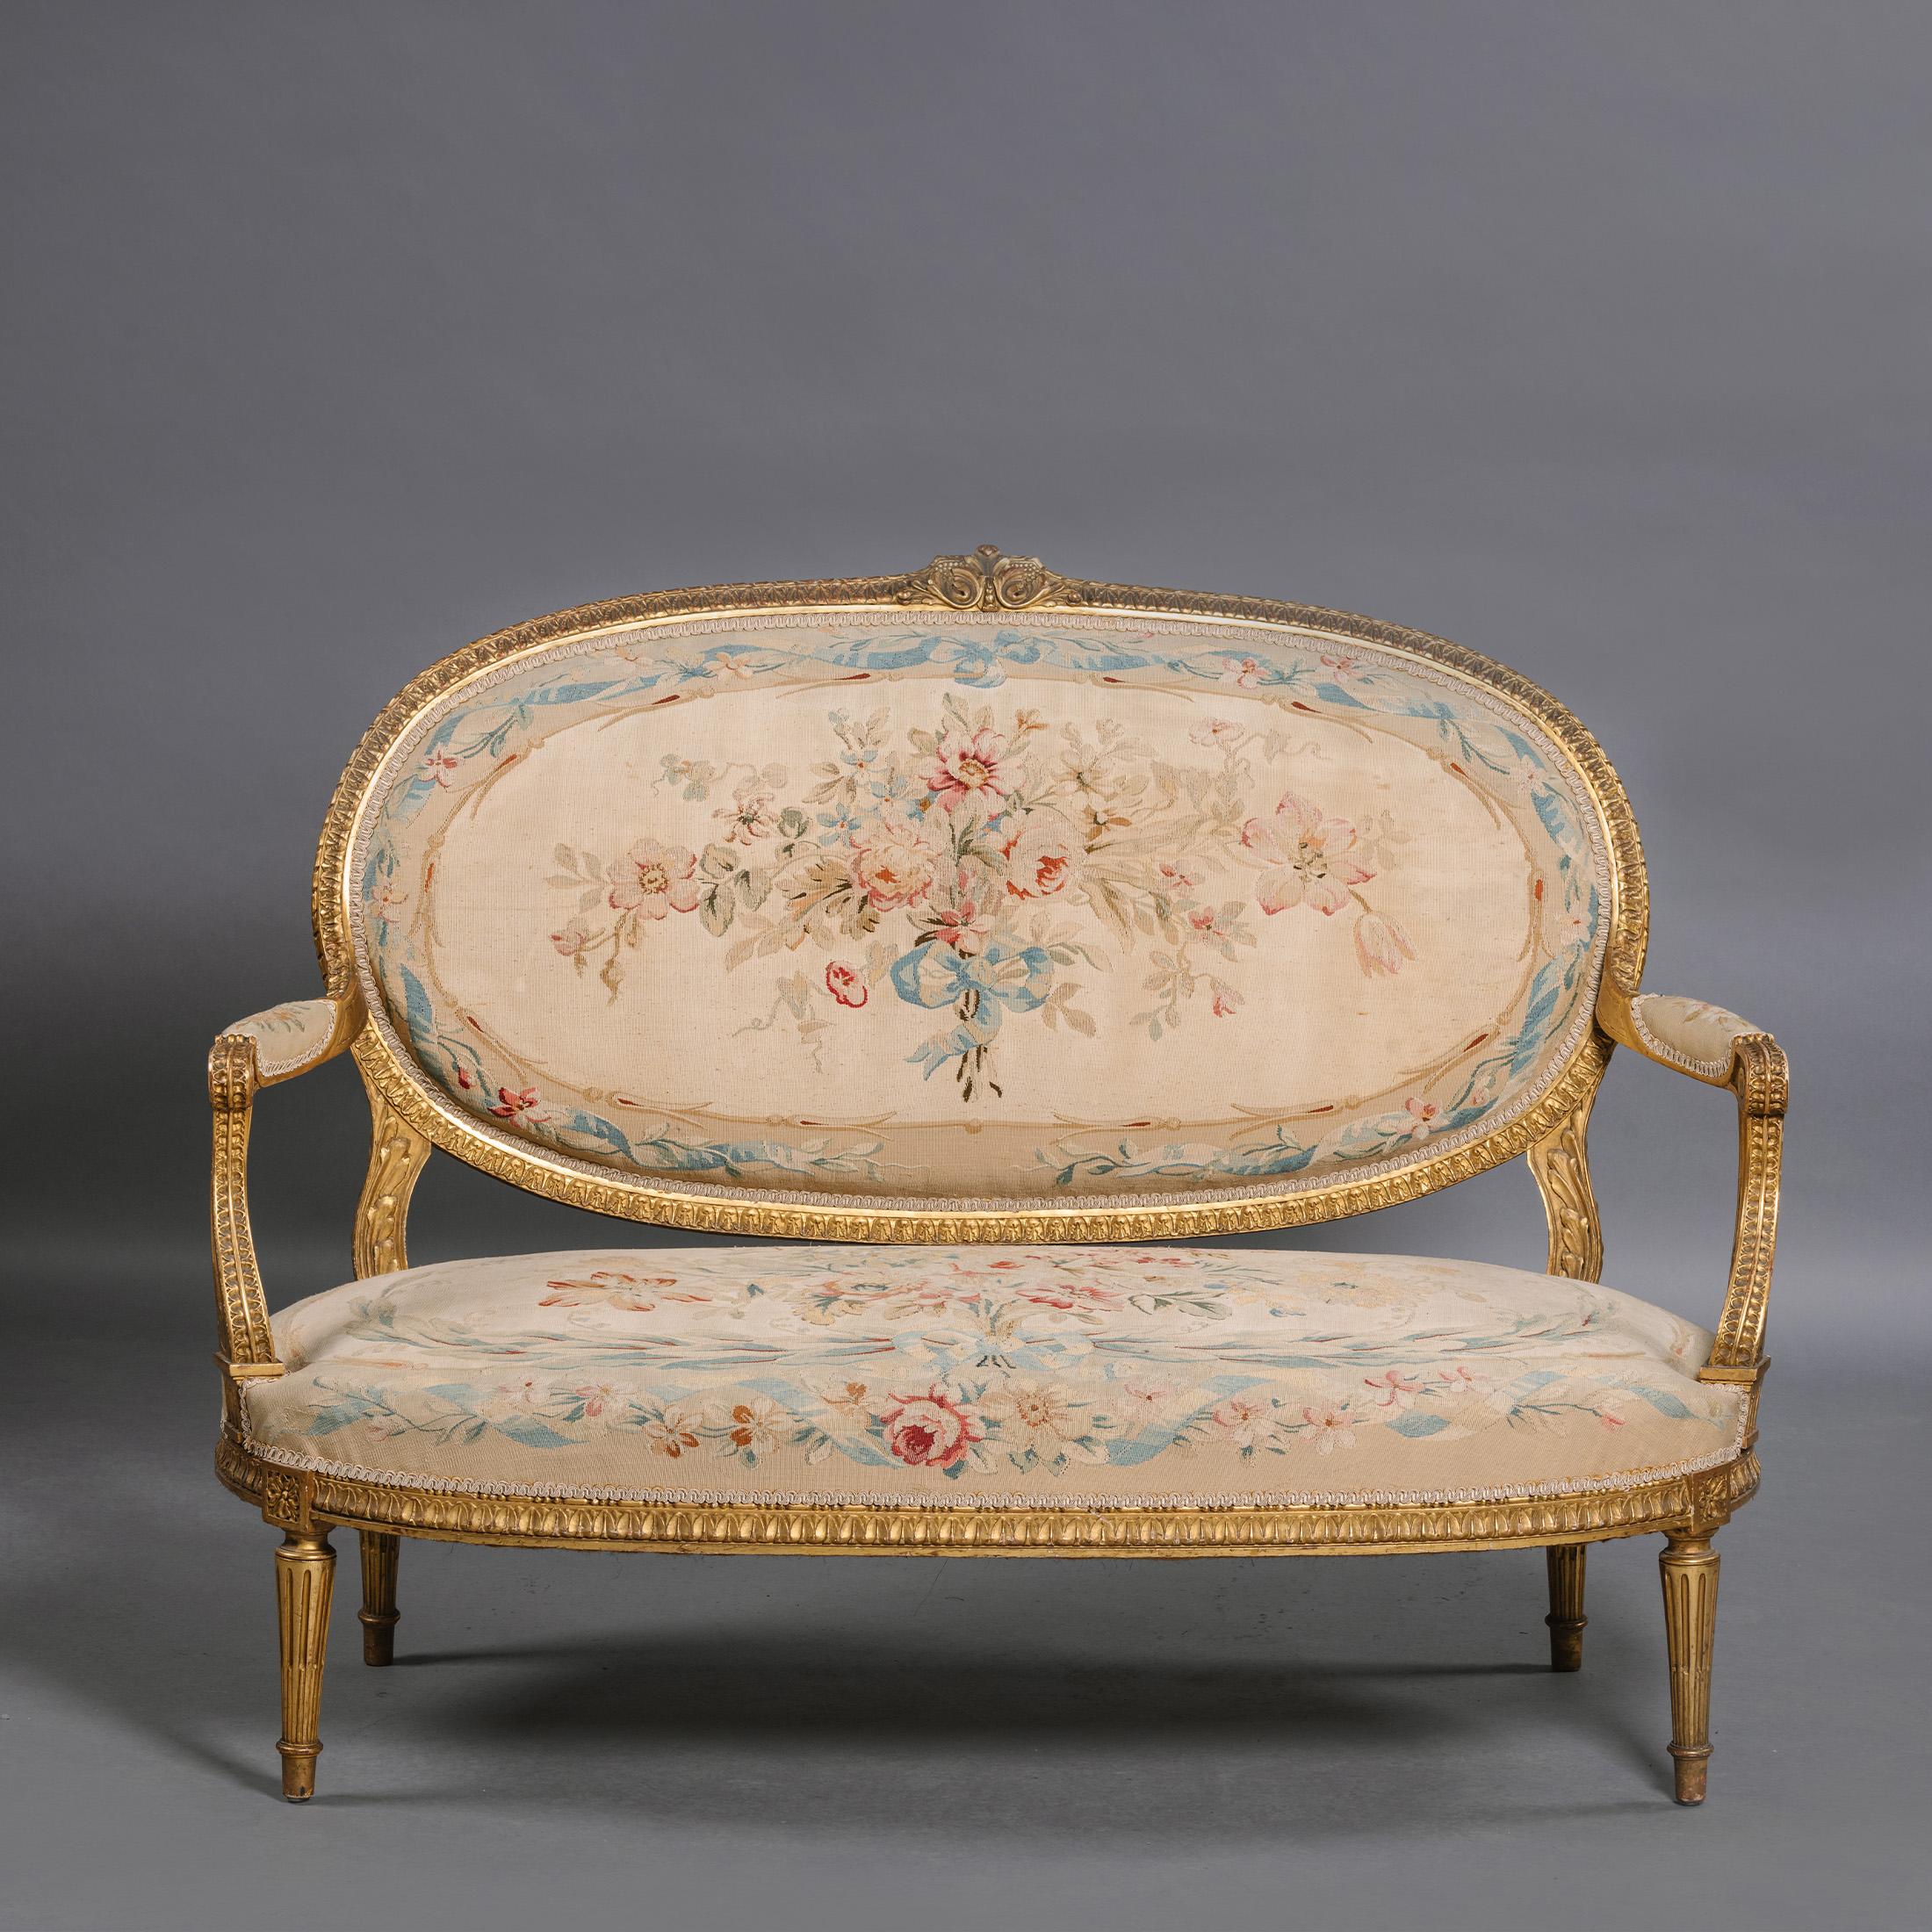 Eine fünfteilige Salon-Suite im Louis-XVI-Stil aus Giltwood und Aubusson-Wandteppich.

Diese Sitzgarnitur besteht aus vier großzügigen Fauteuils oder offenen Sesseln und einem Kanapee oder einem Sofa, jeweils en suite. Jede hat einen Rahmen aus